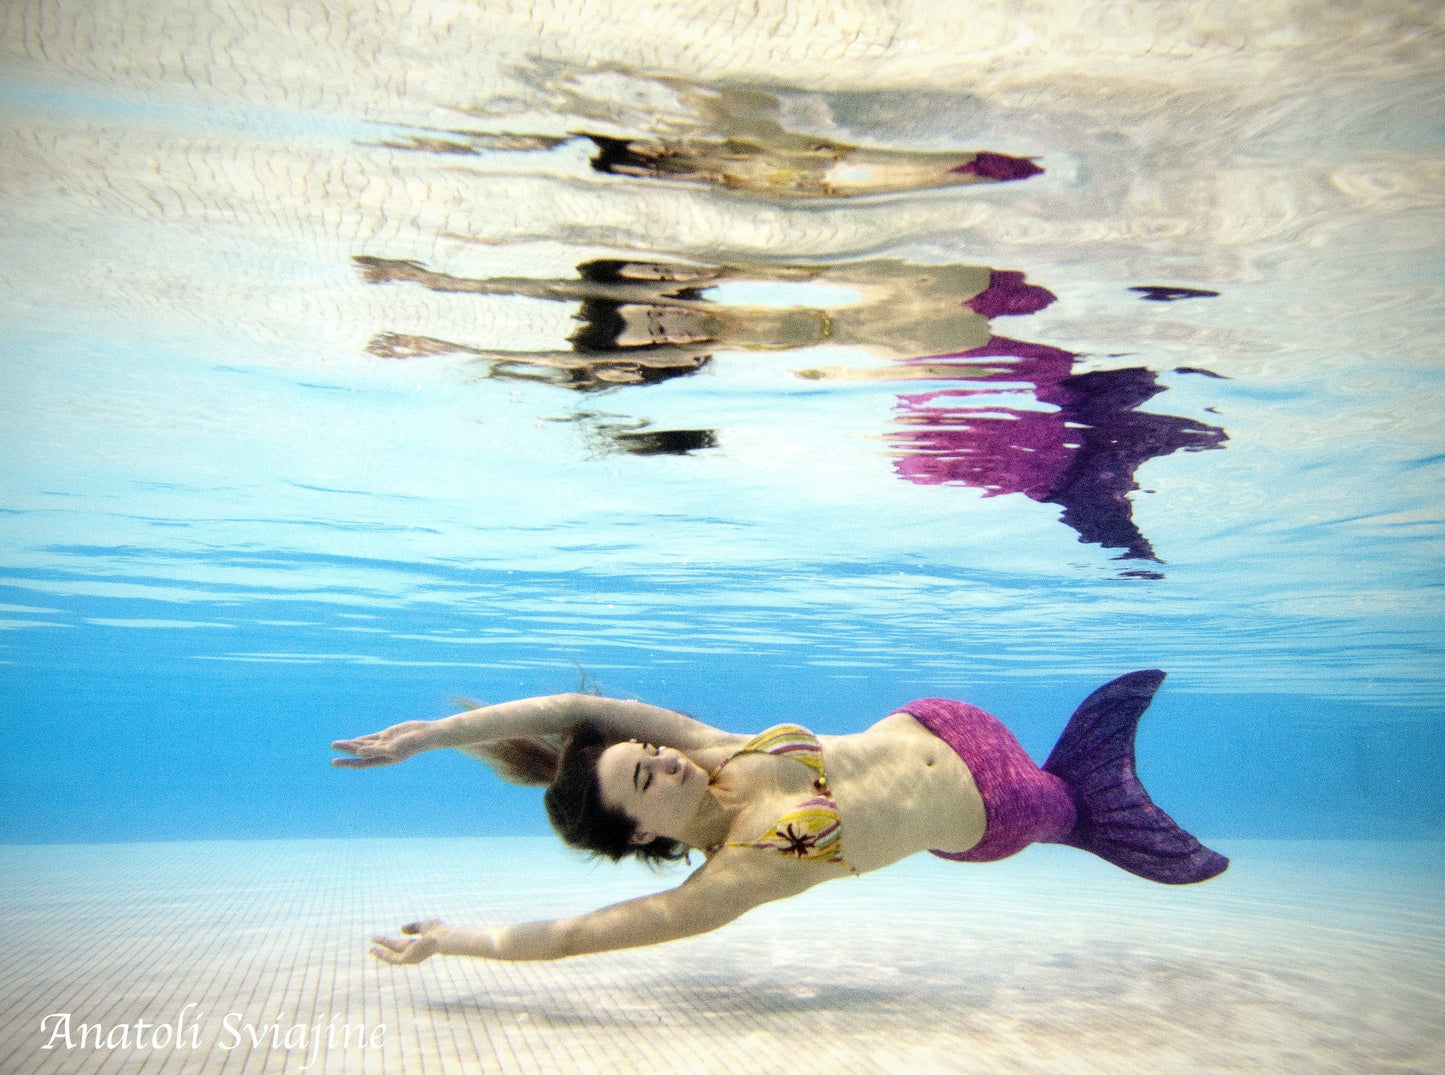 Cours de natation Megafest Mermaid pour ENFANTS et ADULTES - du 25 au 28 mai